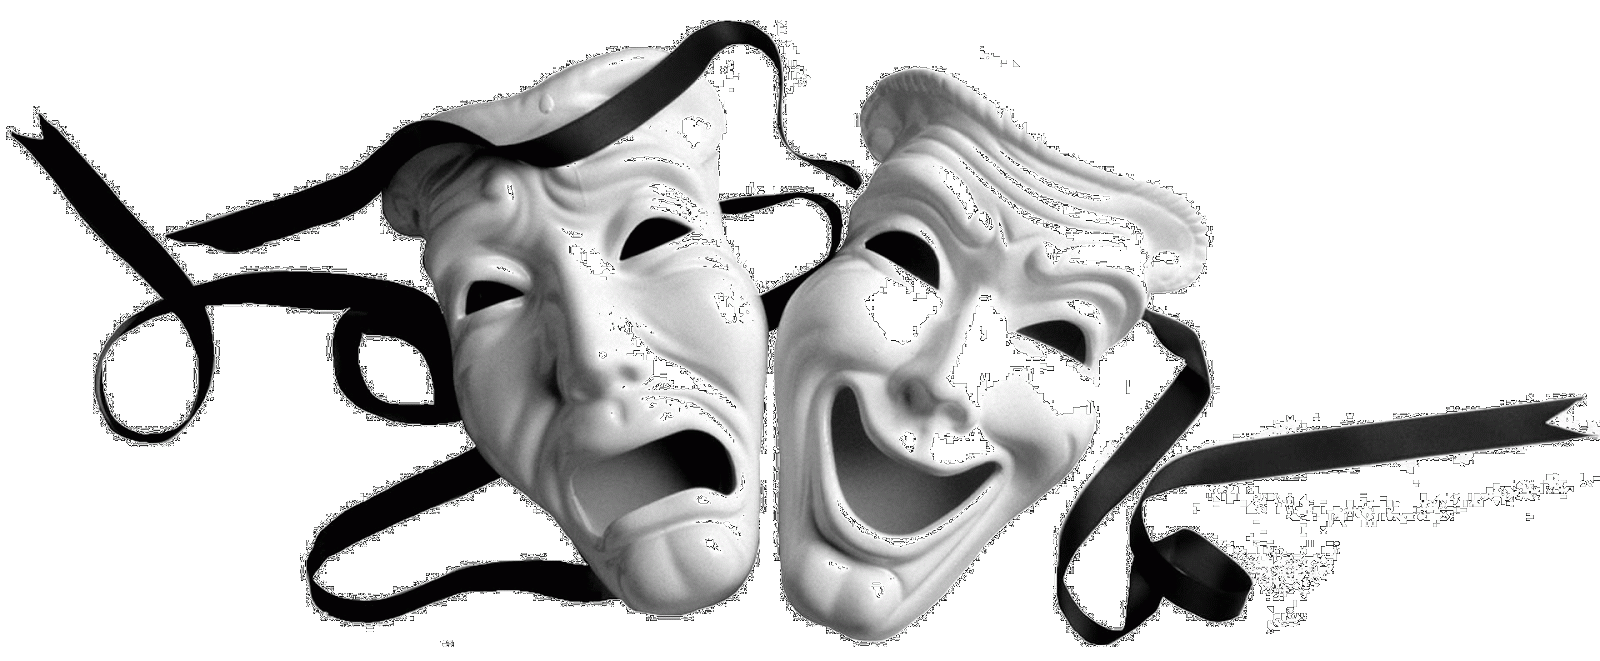 Theater Masks